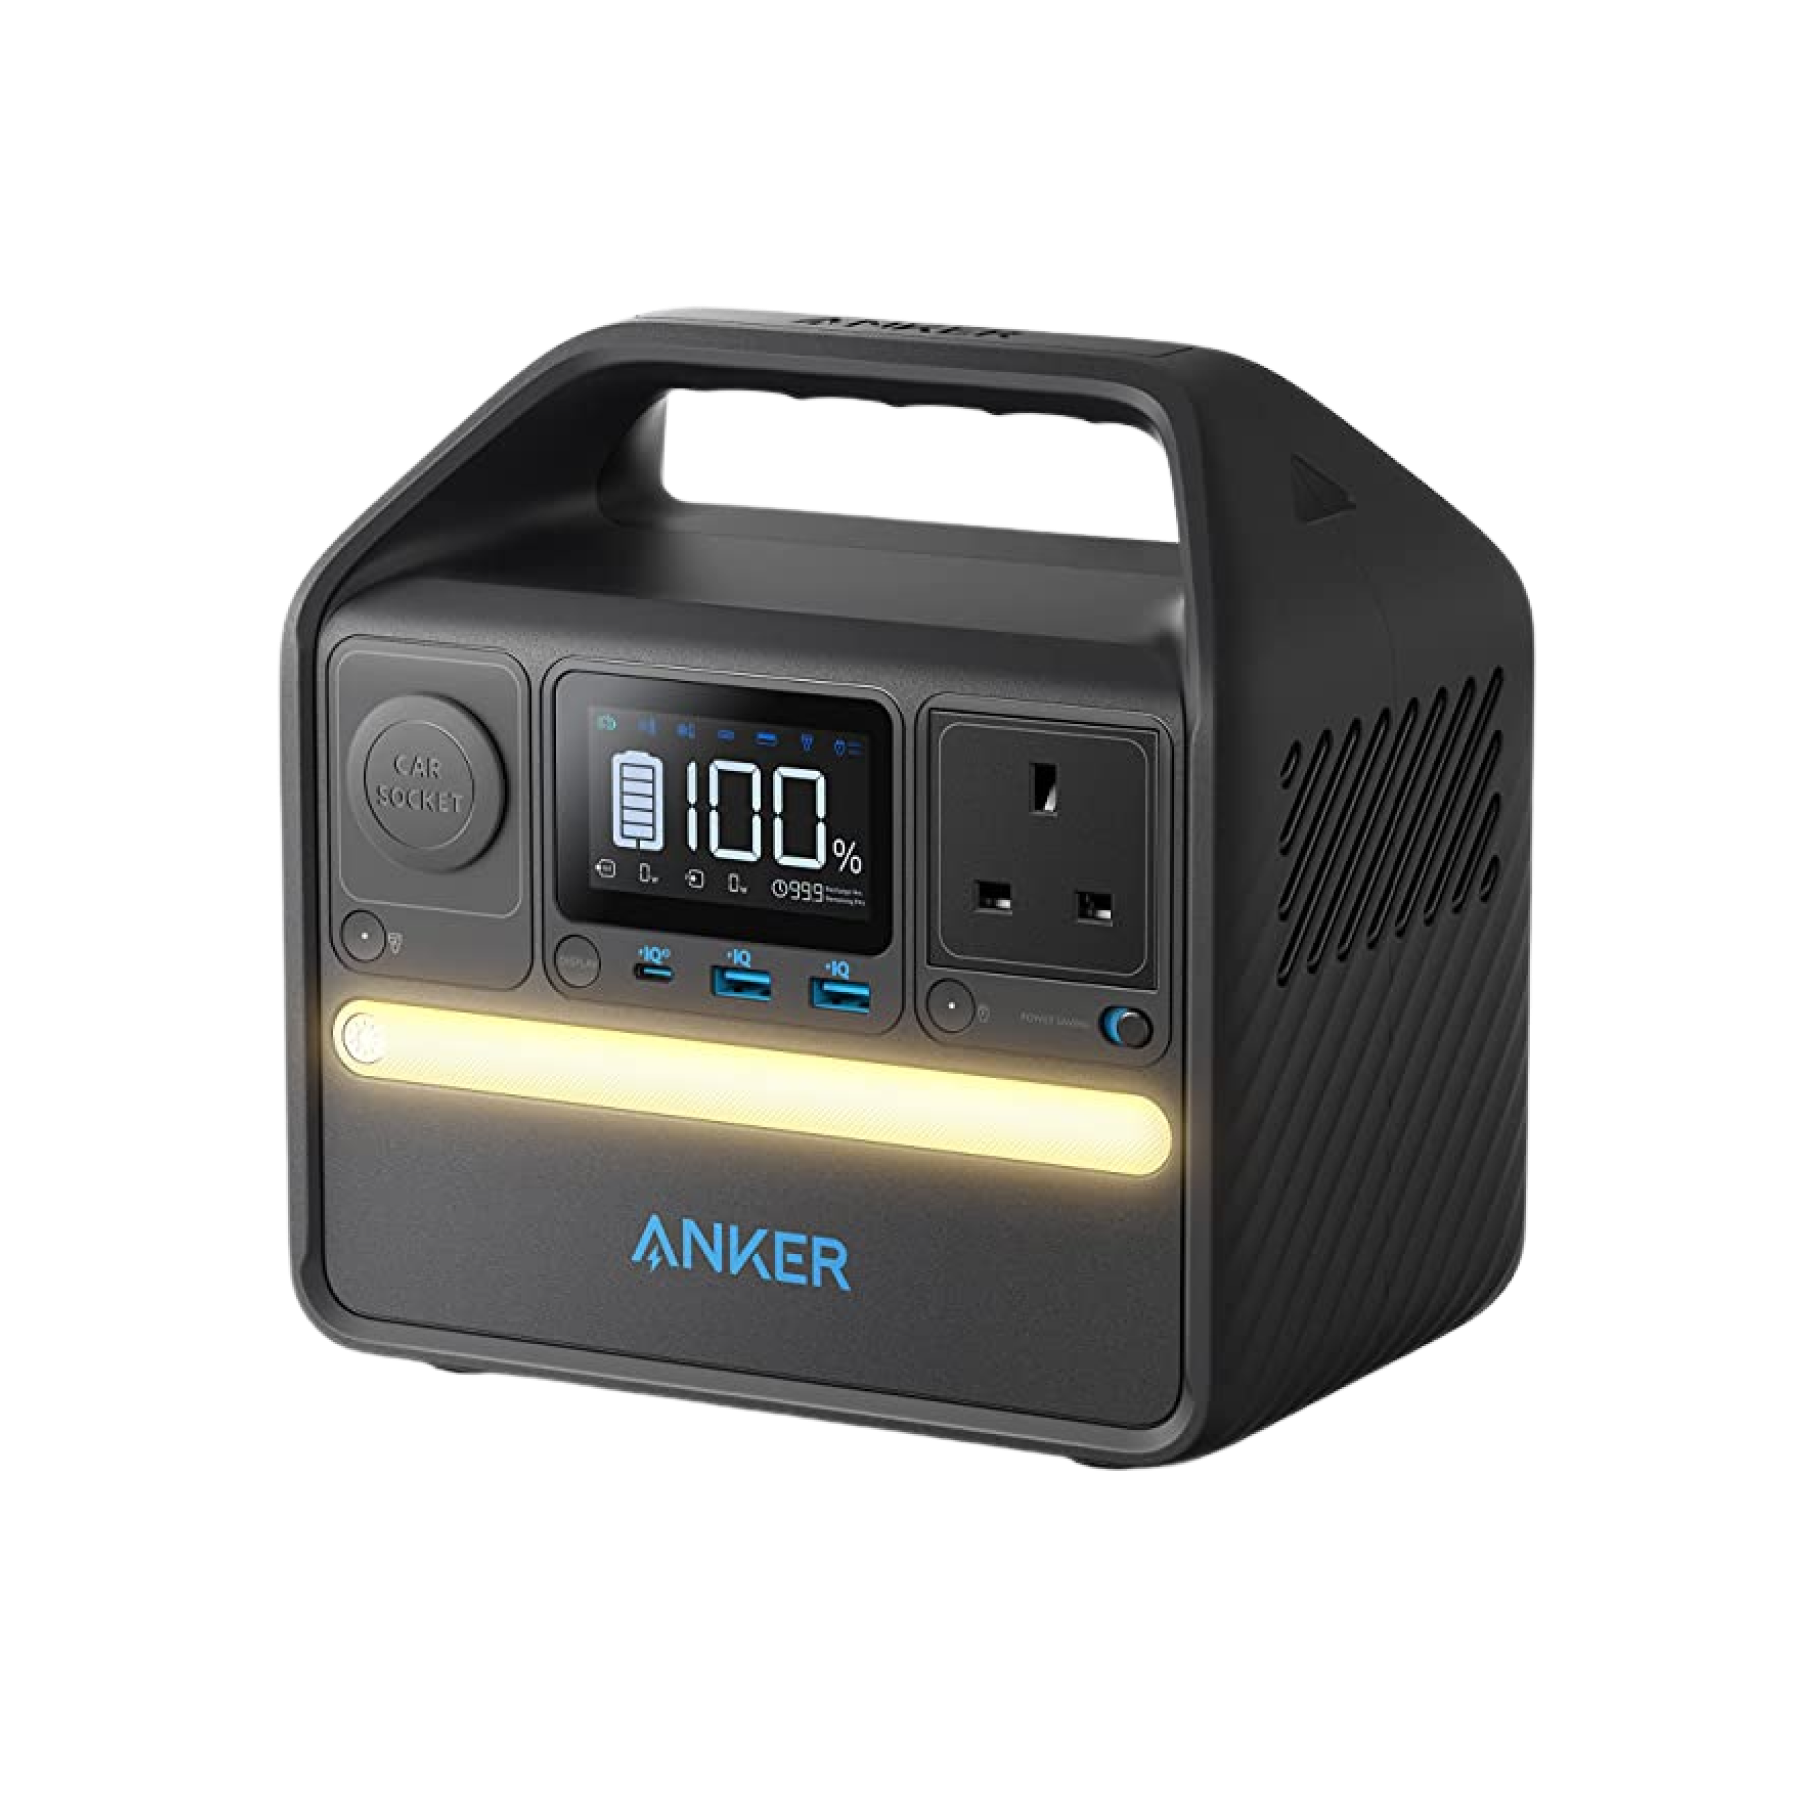 Anker 533 Wireless Power Bank (PowerCore 10K)